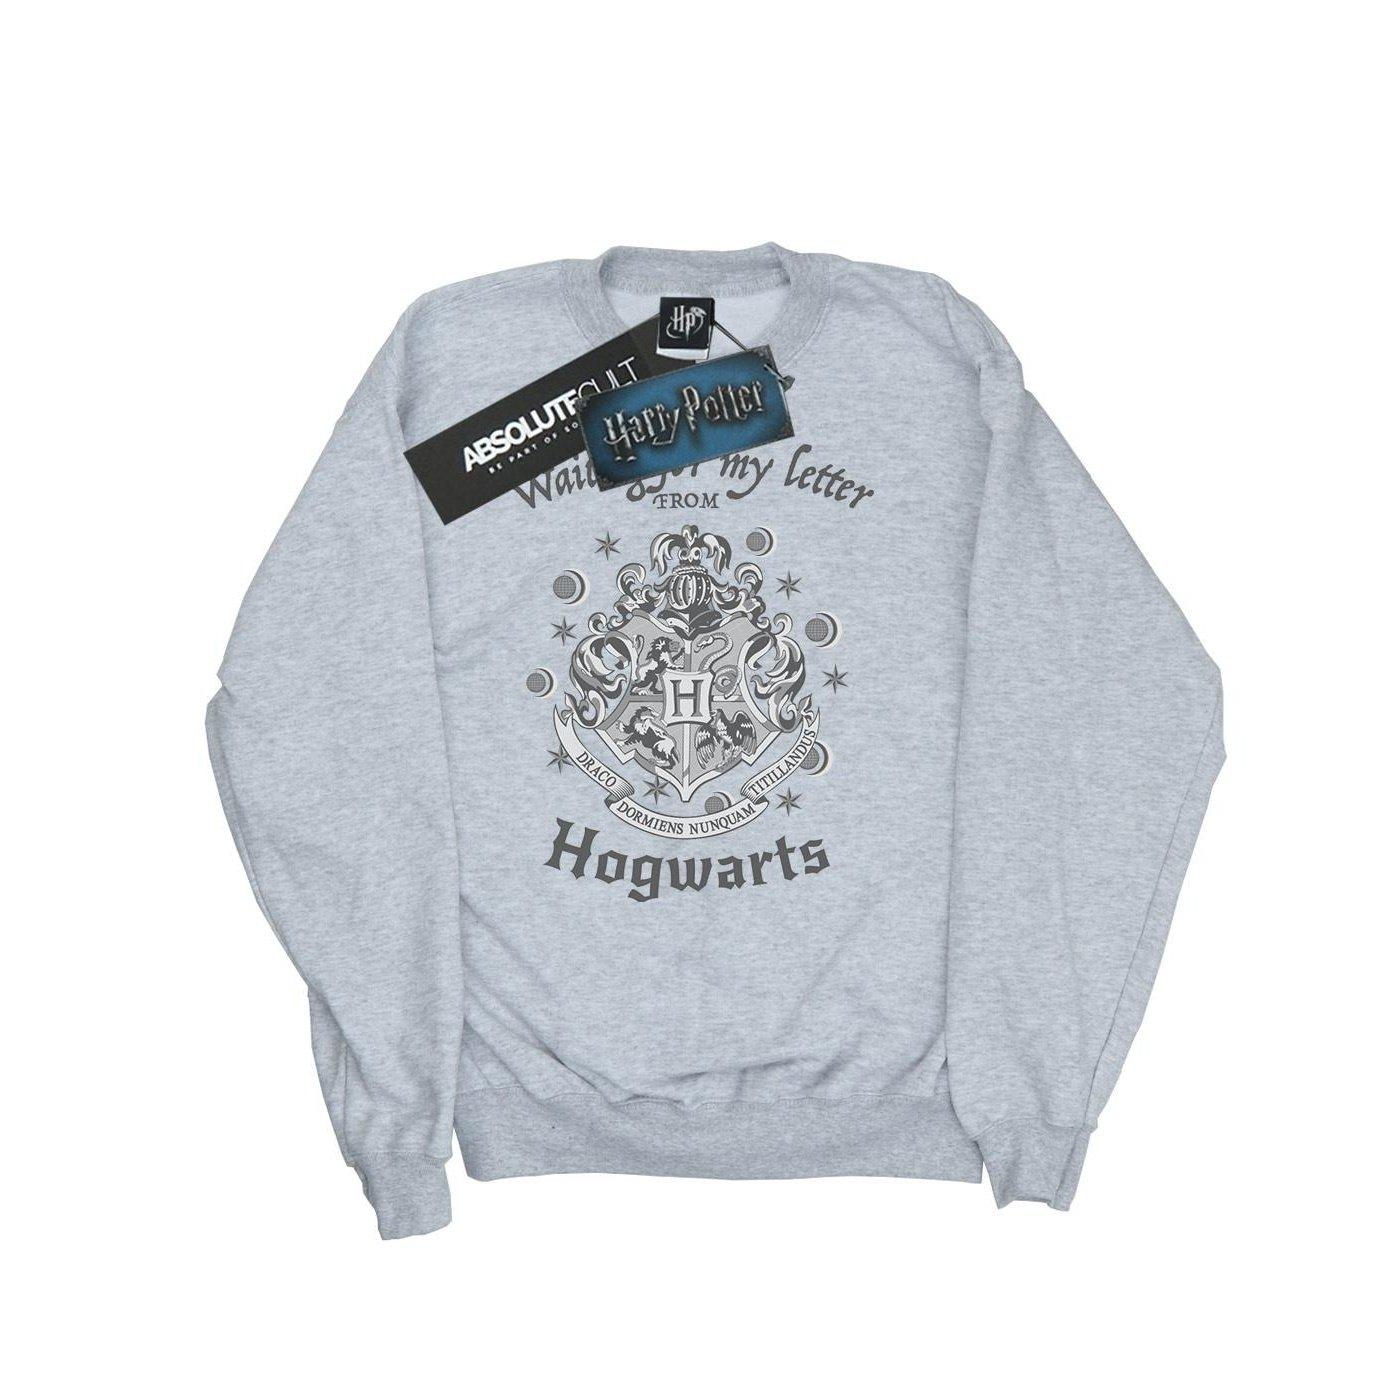 Hogwarts Waiting For My Letter Sweatshirt Unisex Grau 152-158 von Harry Potter